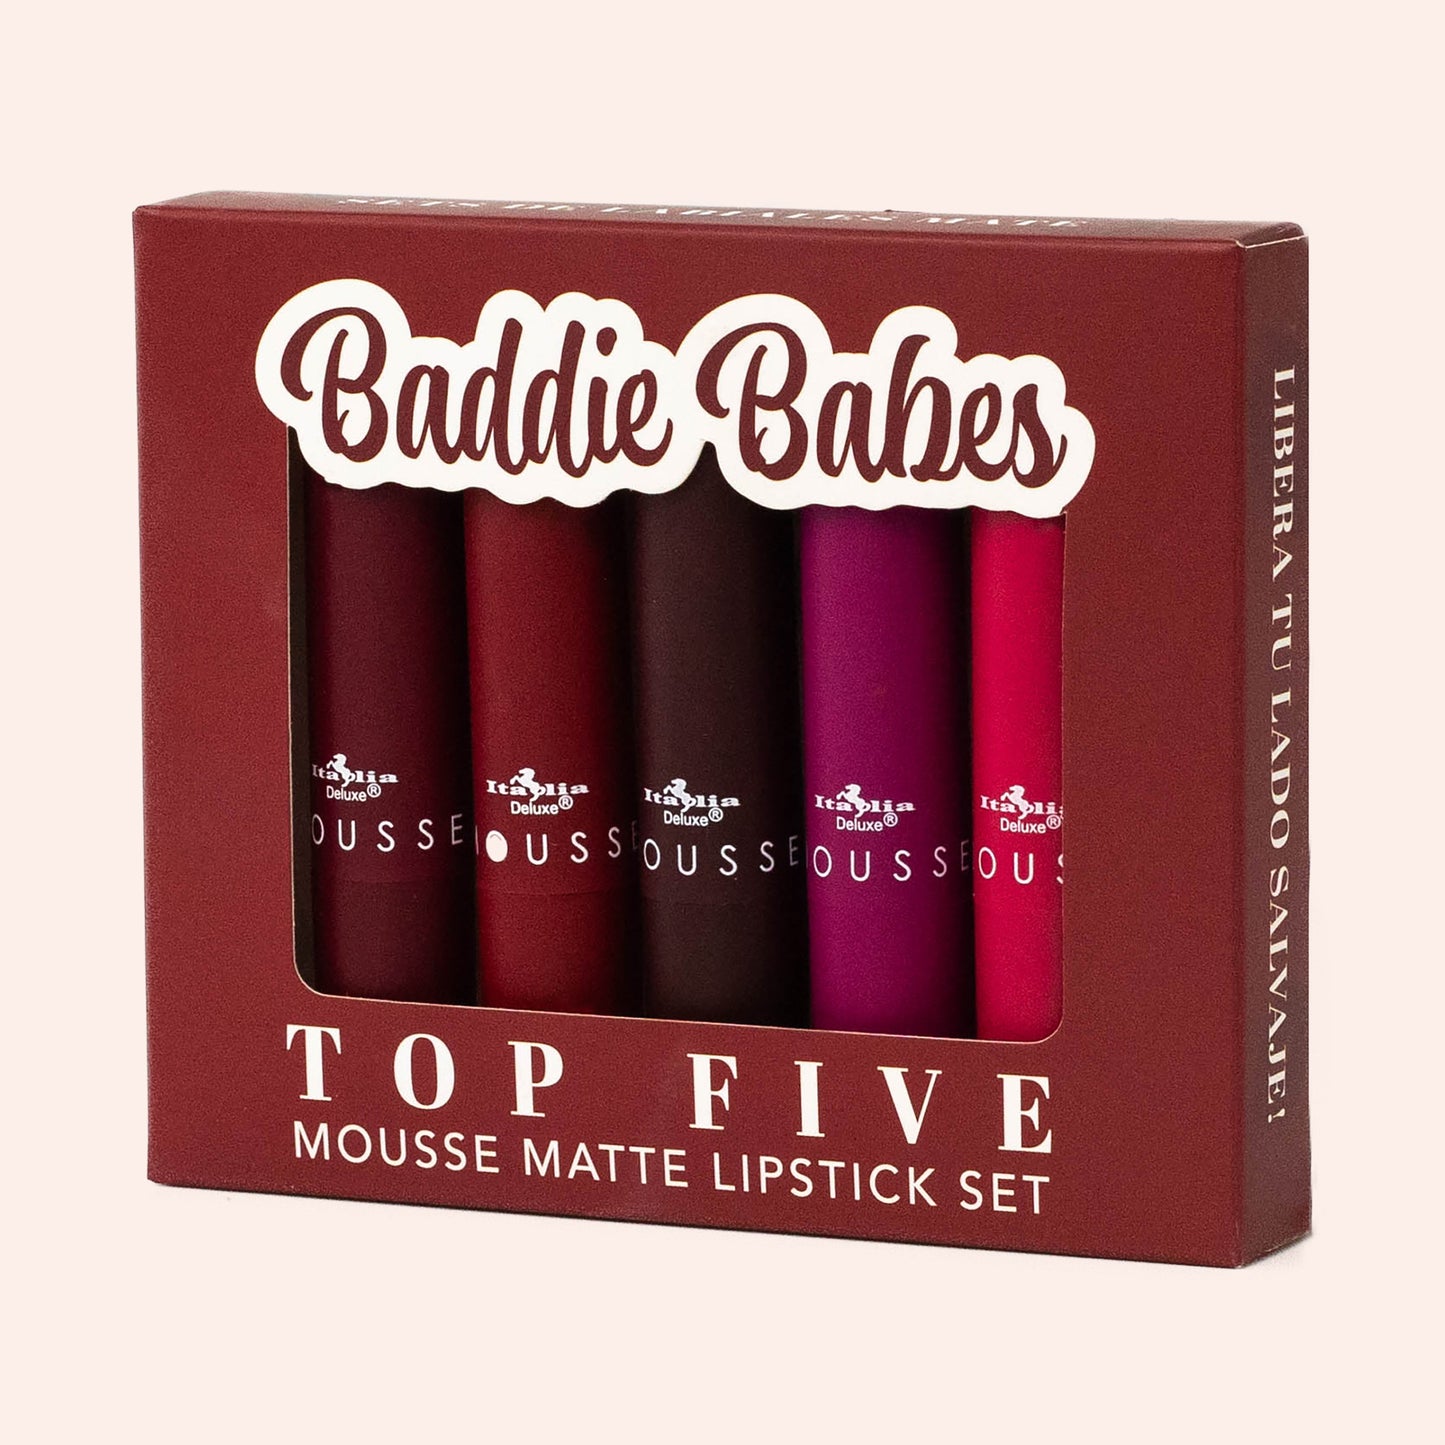 Mousse Matte Lipstick - Top Five Sets